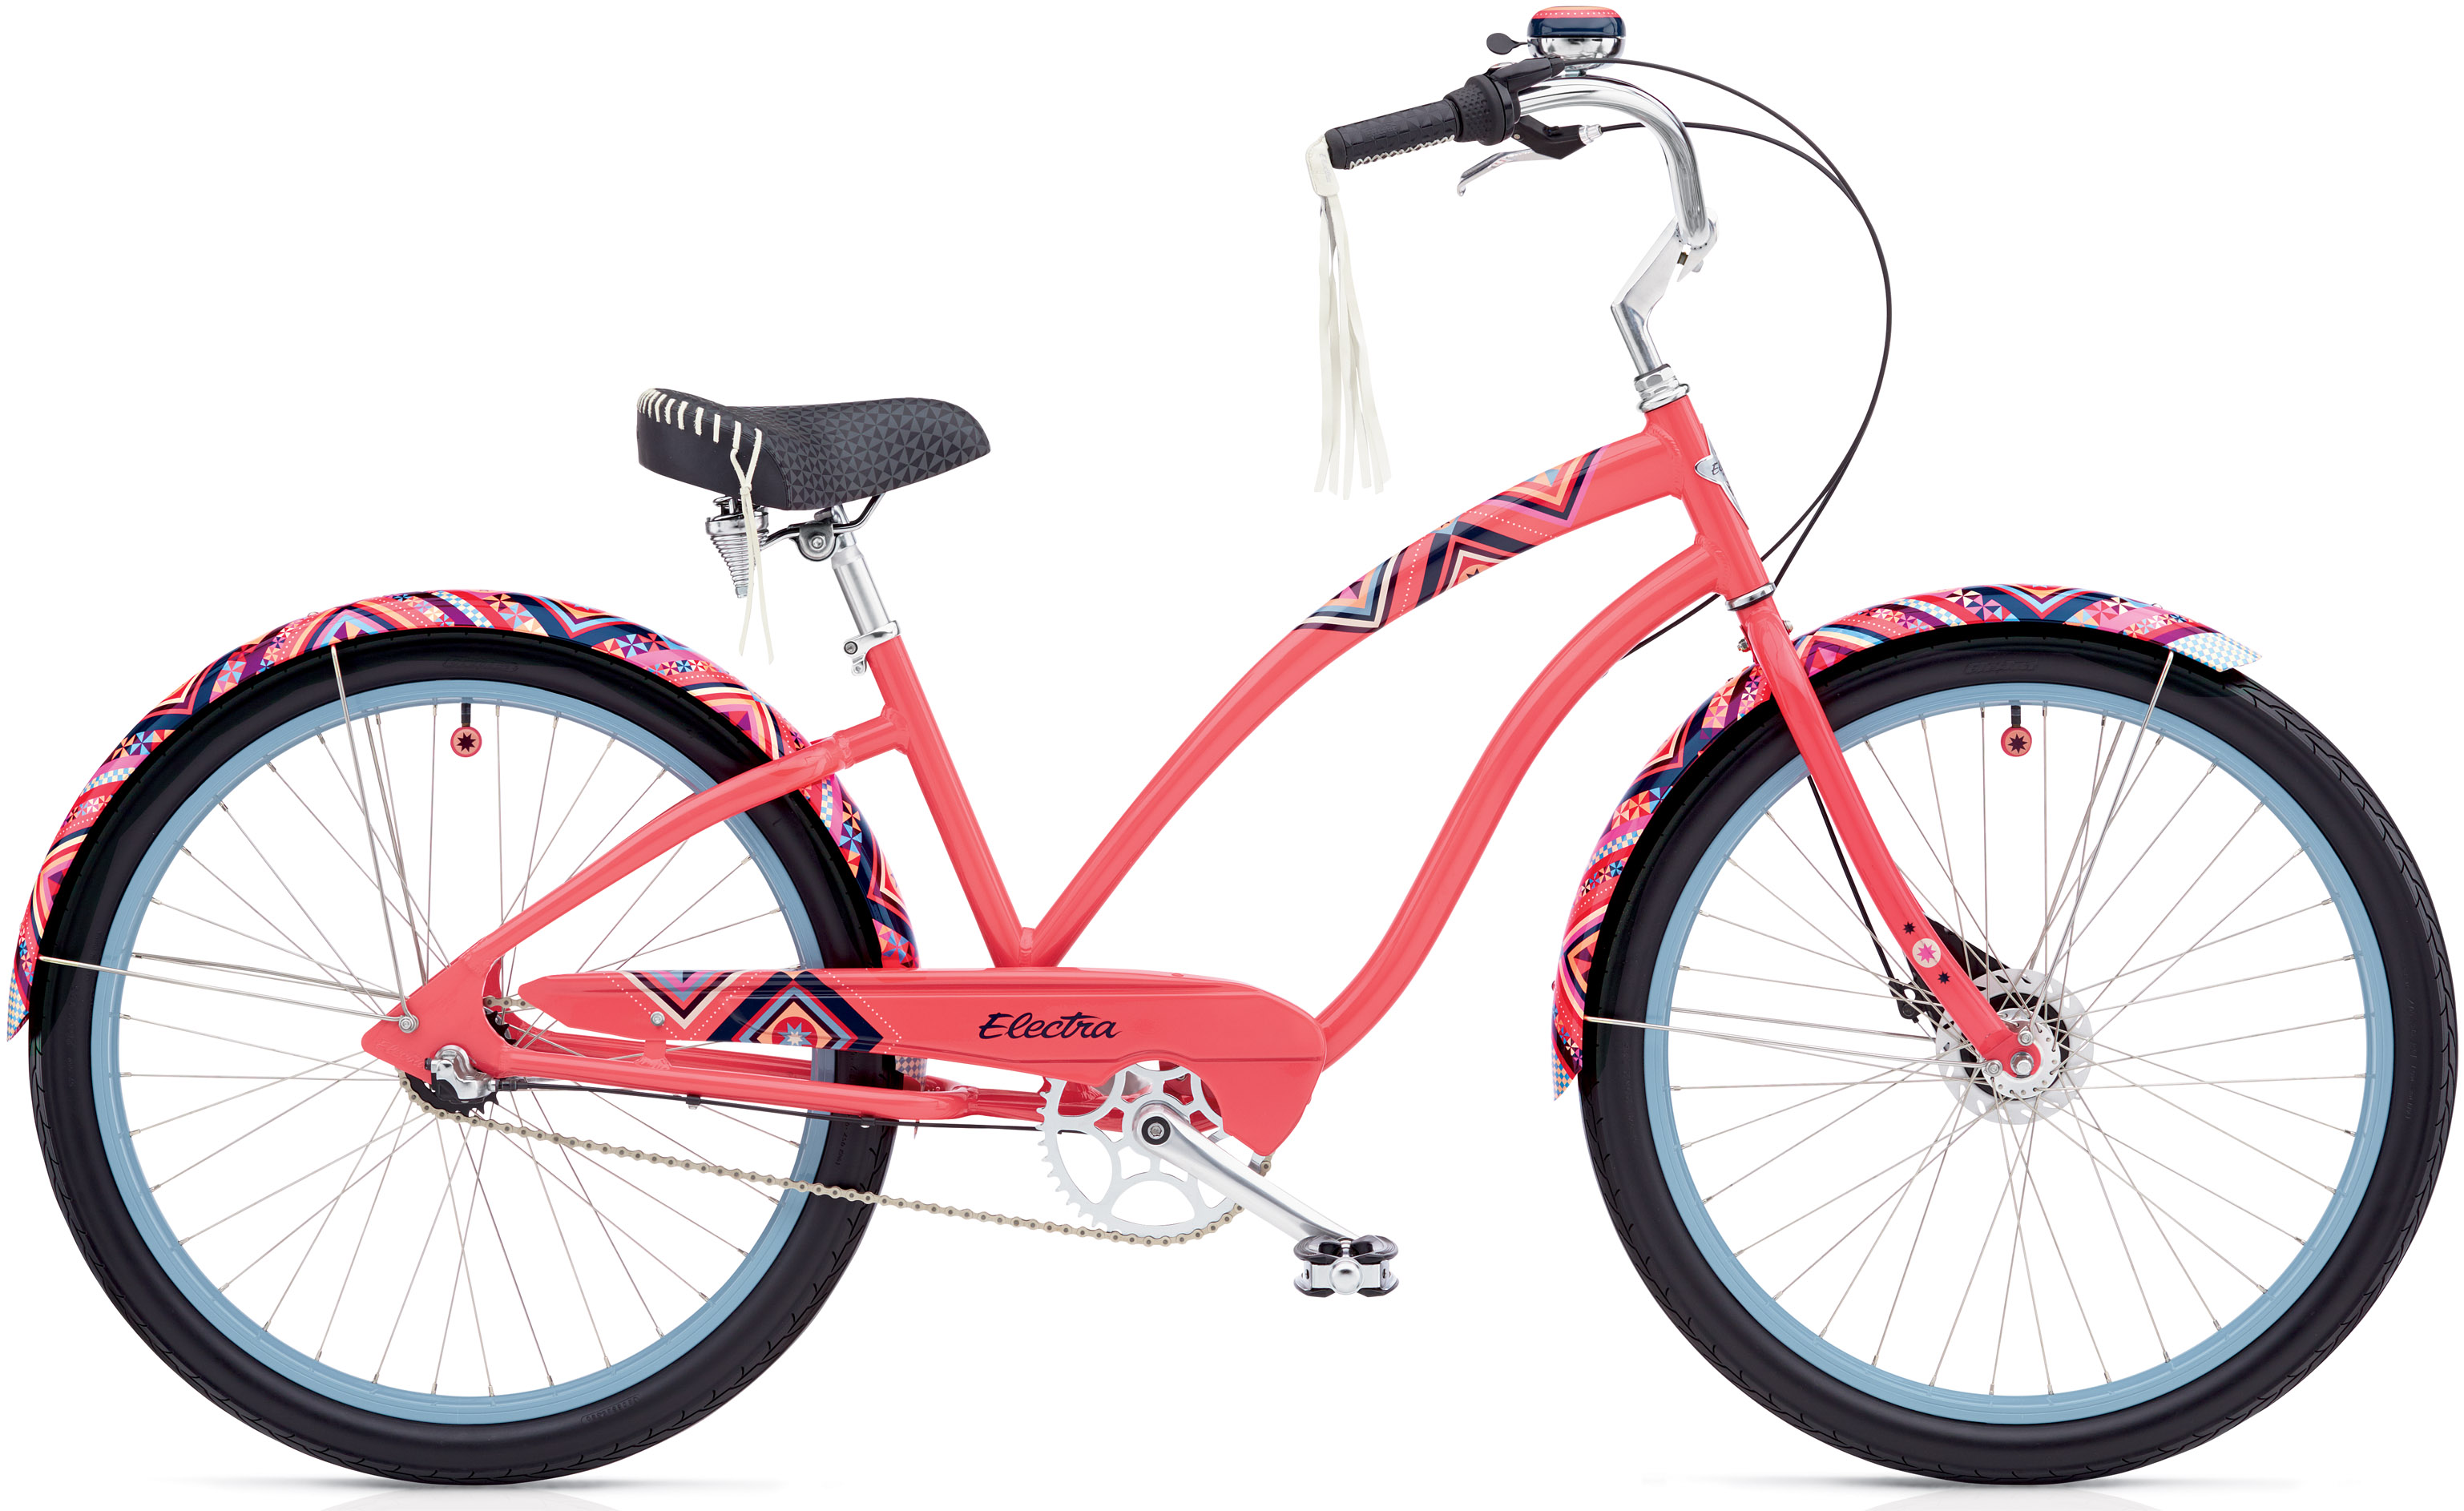  Отзывы о Велосипеде круизере Electra Morning Star 3i 2020